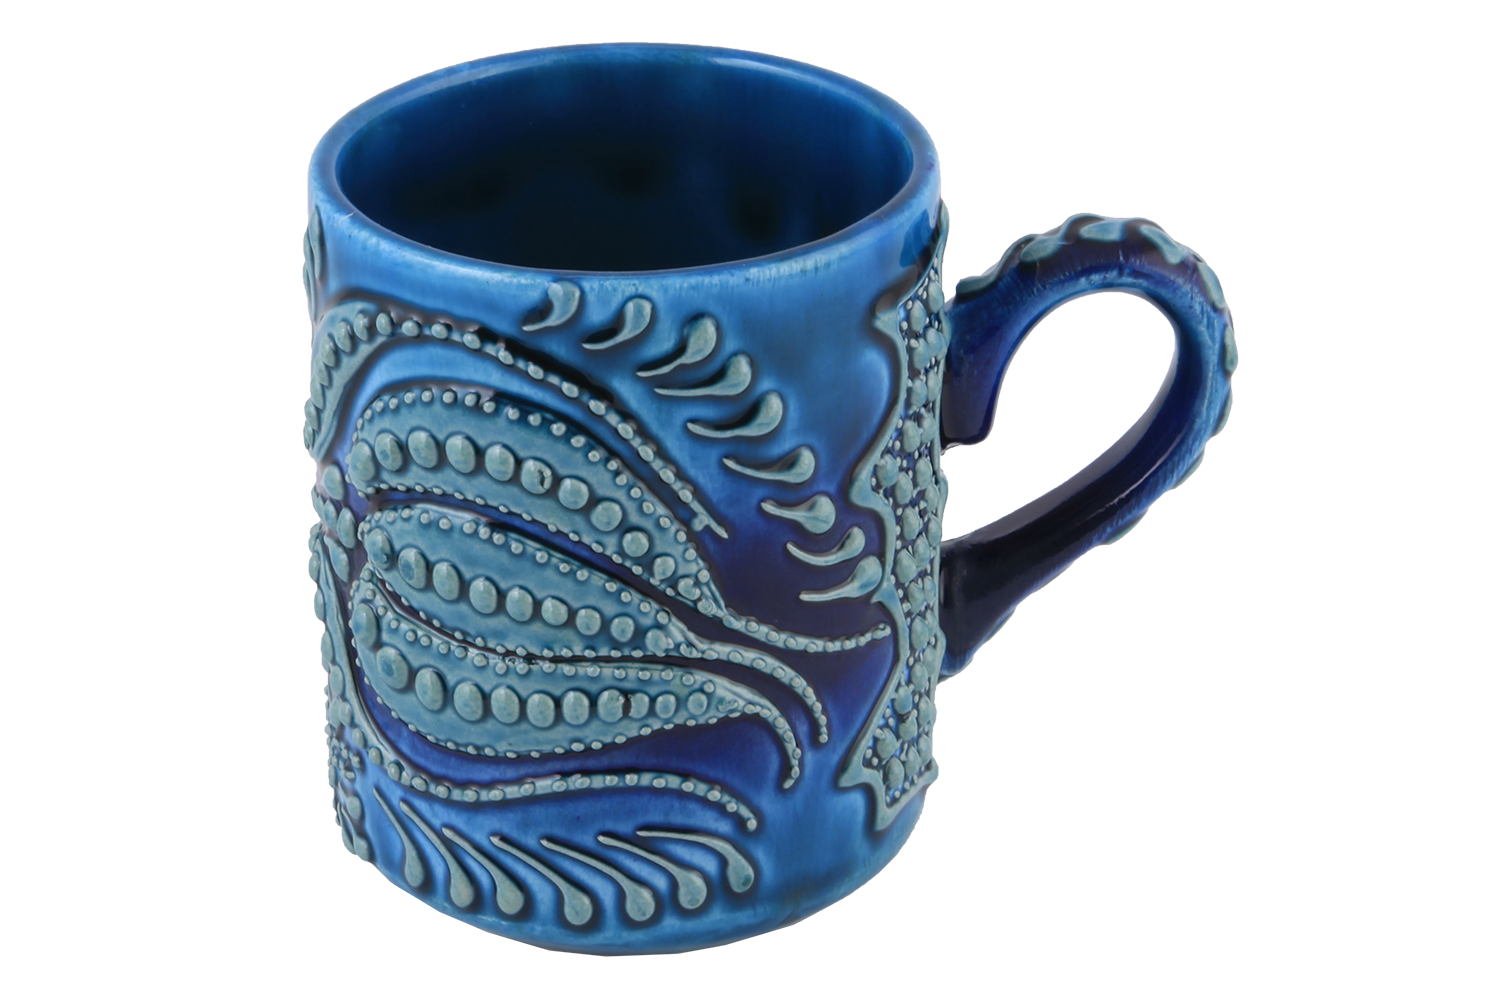 Handmade Ceramic Mug - Medium Size